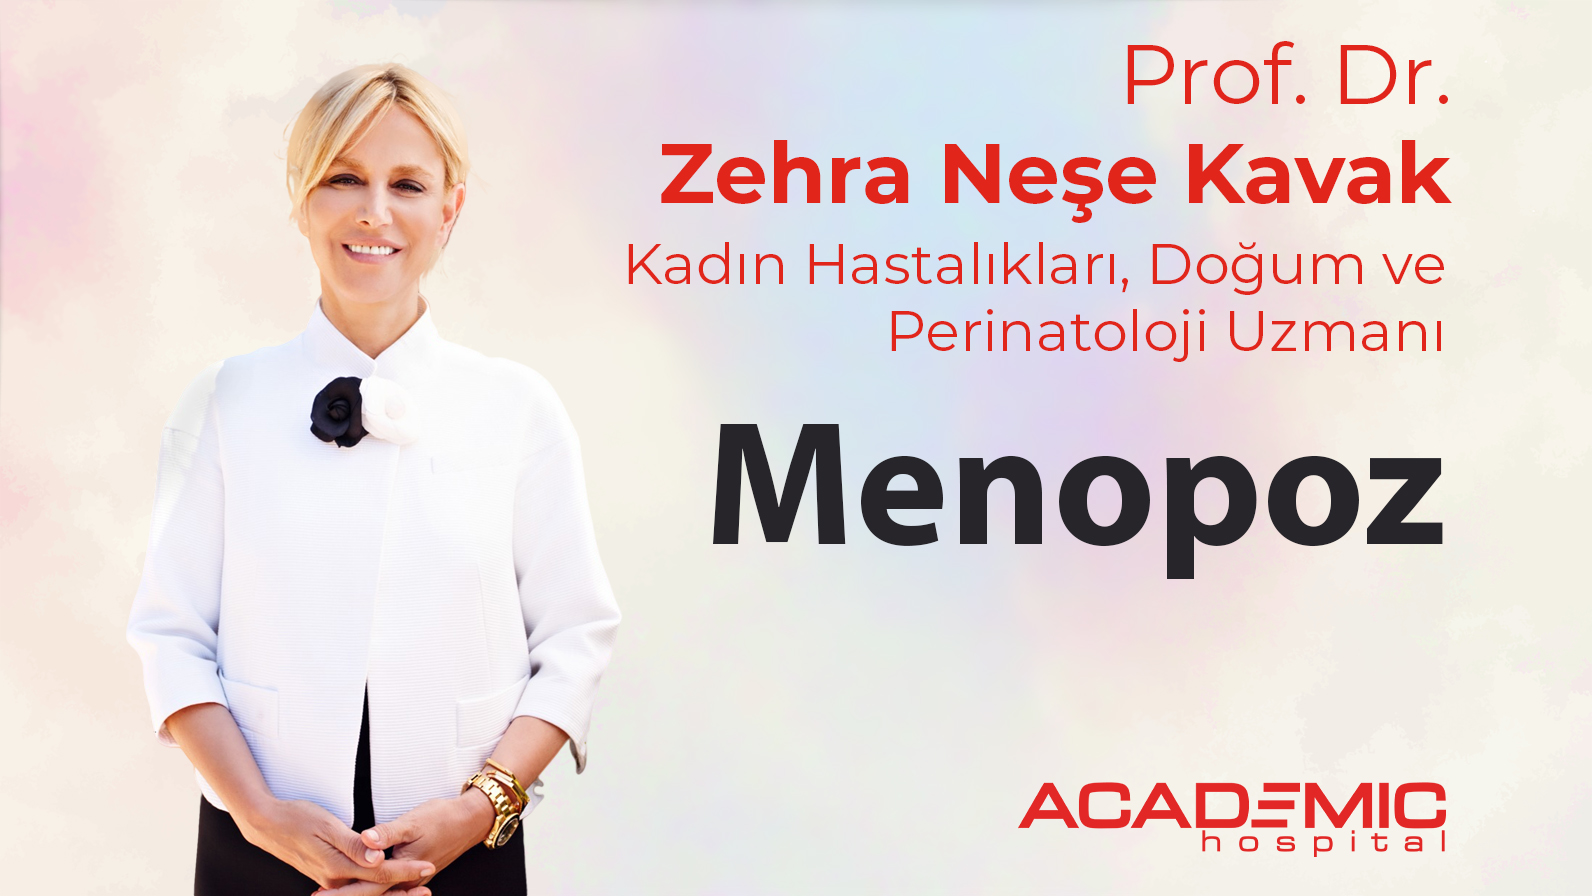 Prof. Dr. Zehra Neşe Kavak Menopozla İlgili Soruları Yanıtladı.